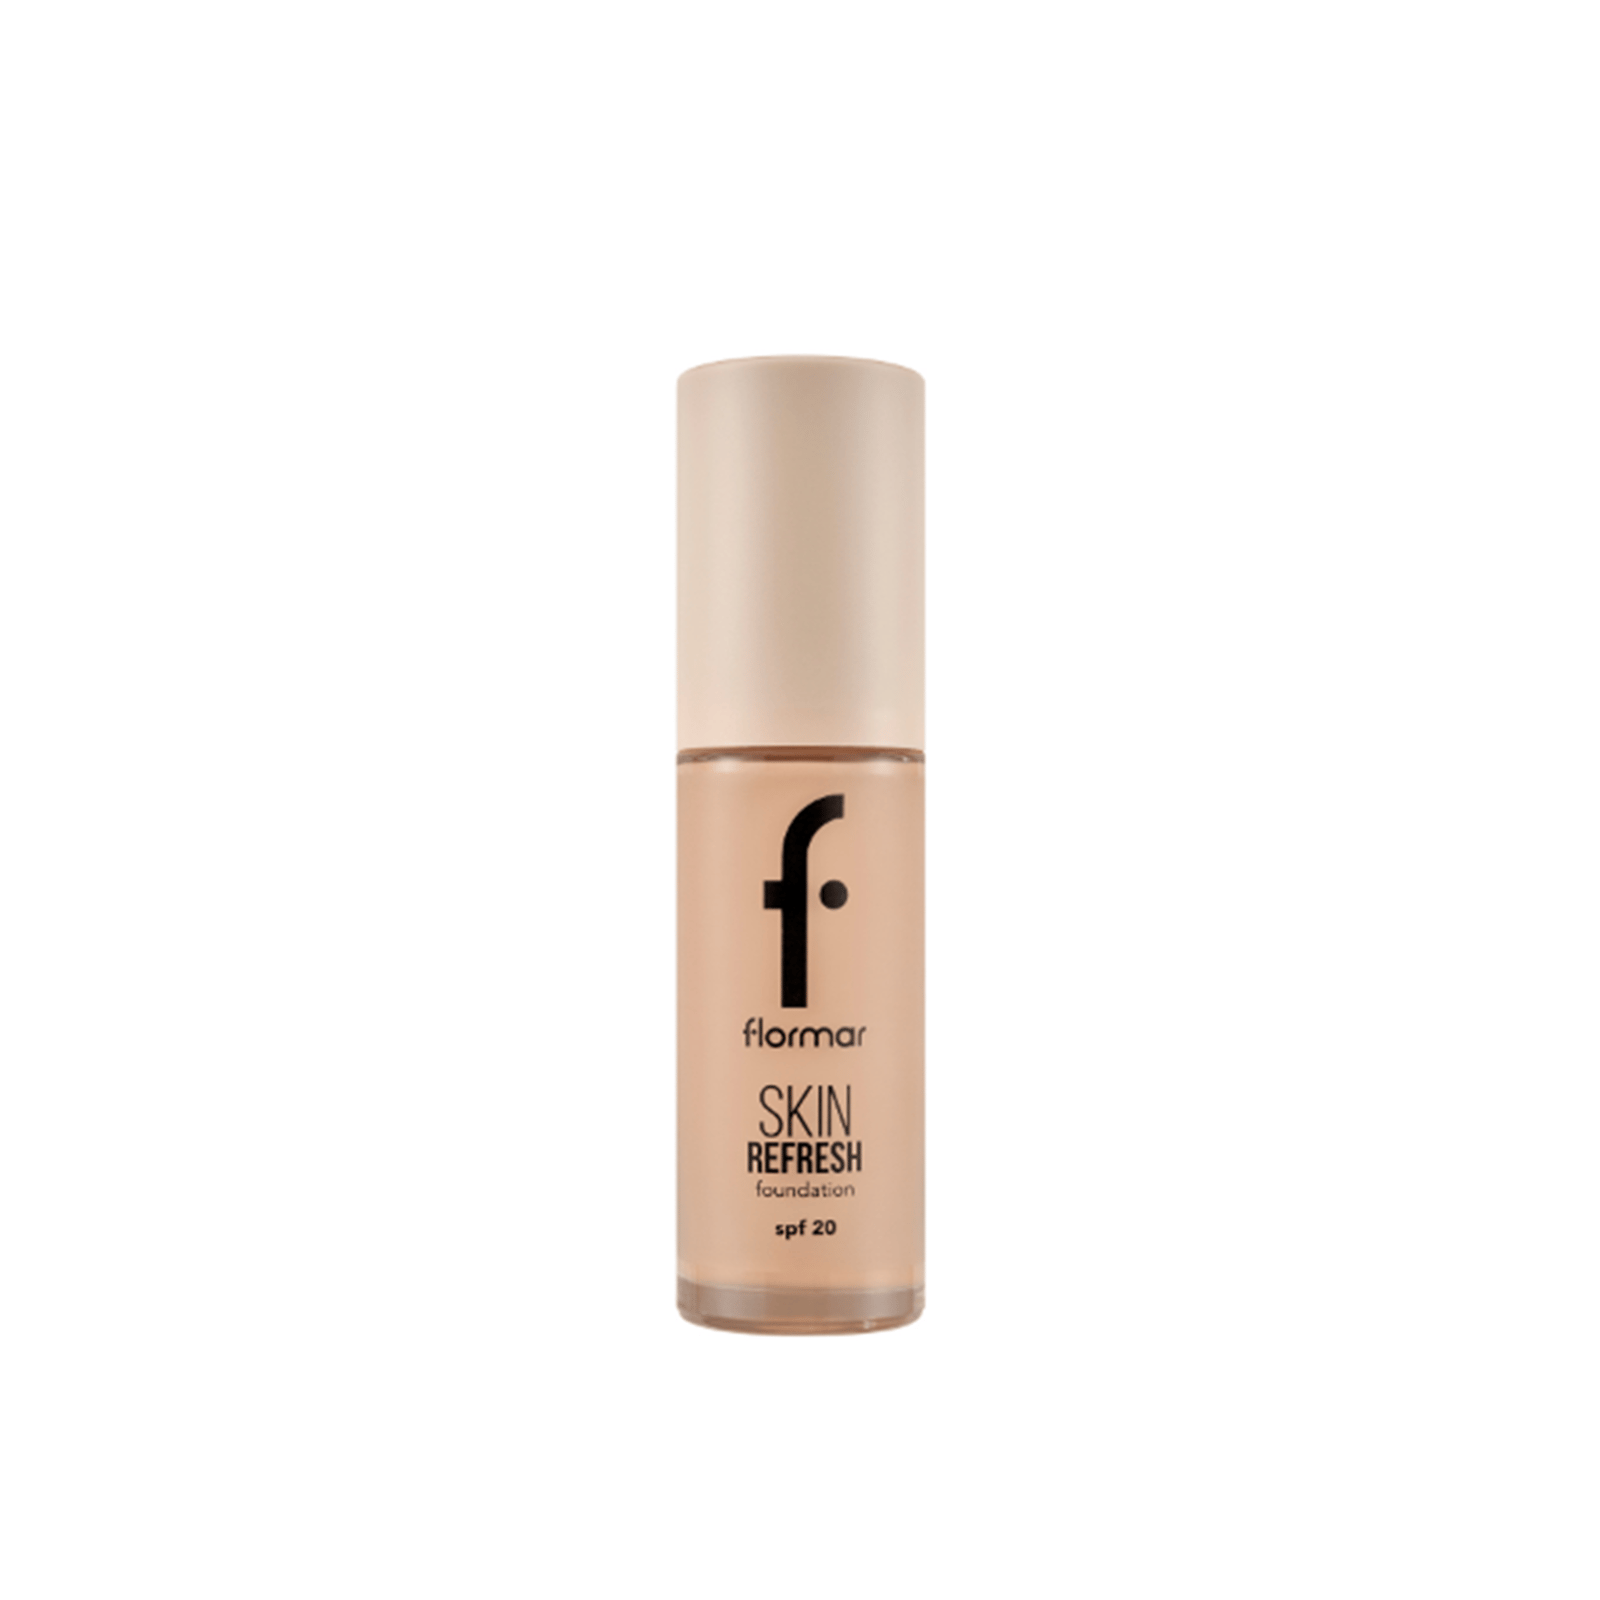 Flormar Skin Refresh Foundation SPF20 004 Rich beige 30ml (1.01floz)